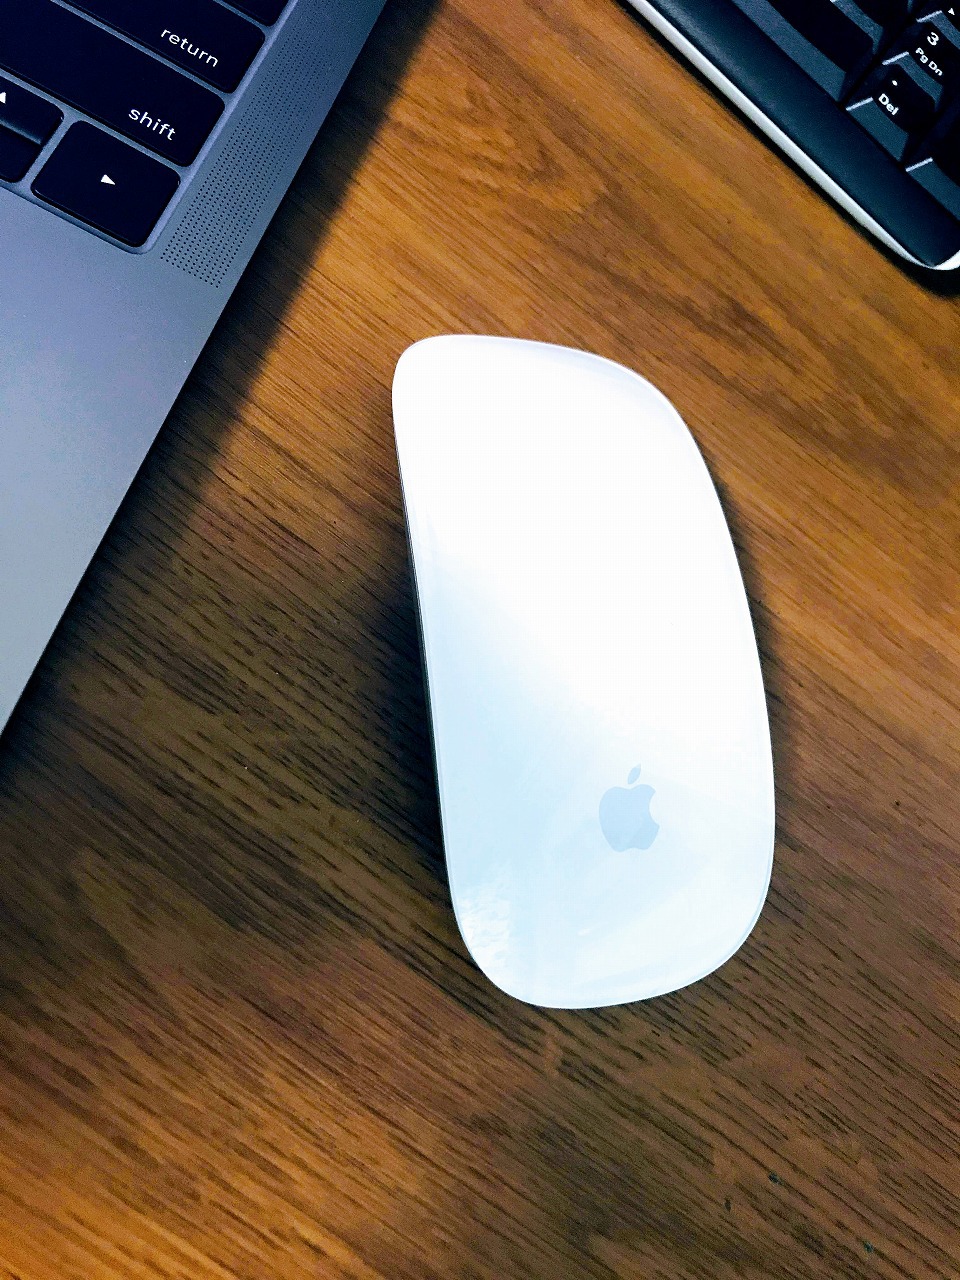 MacBook Pro用にApple純正マウス「Magic Mouse 2」を買ってみた 